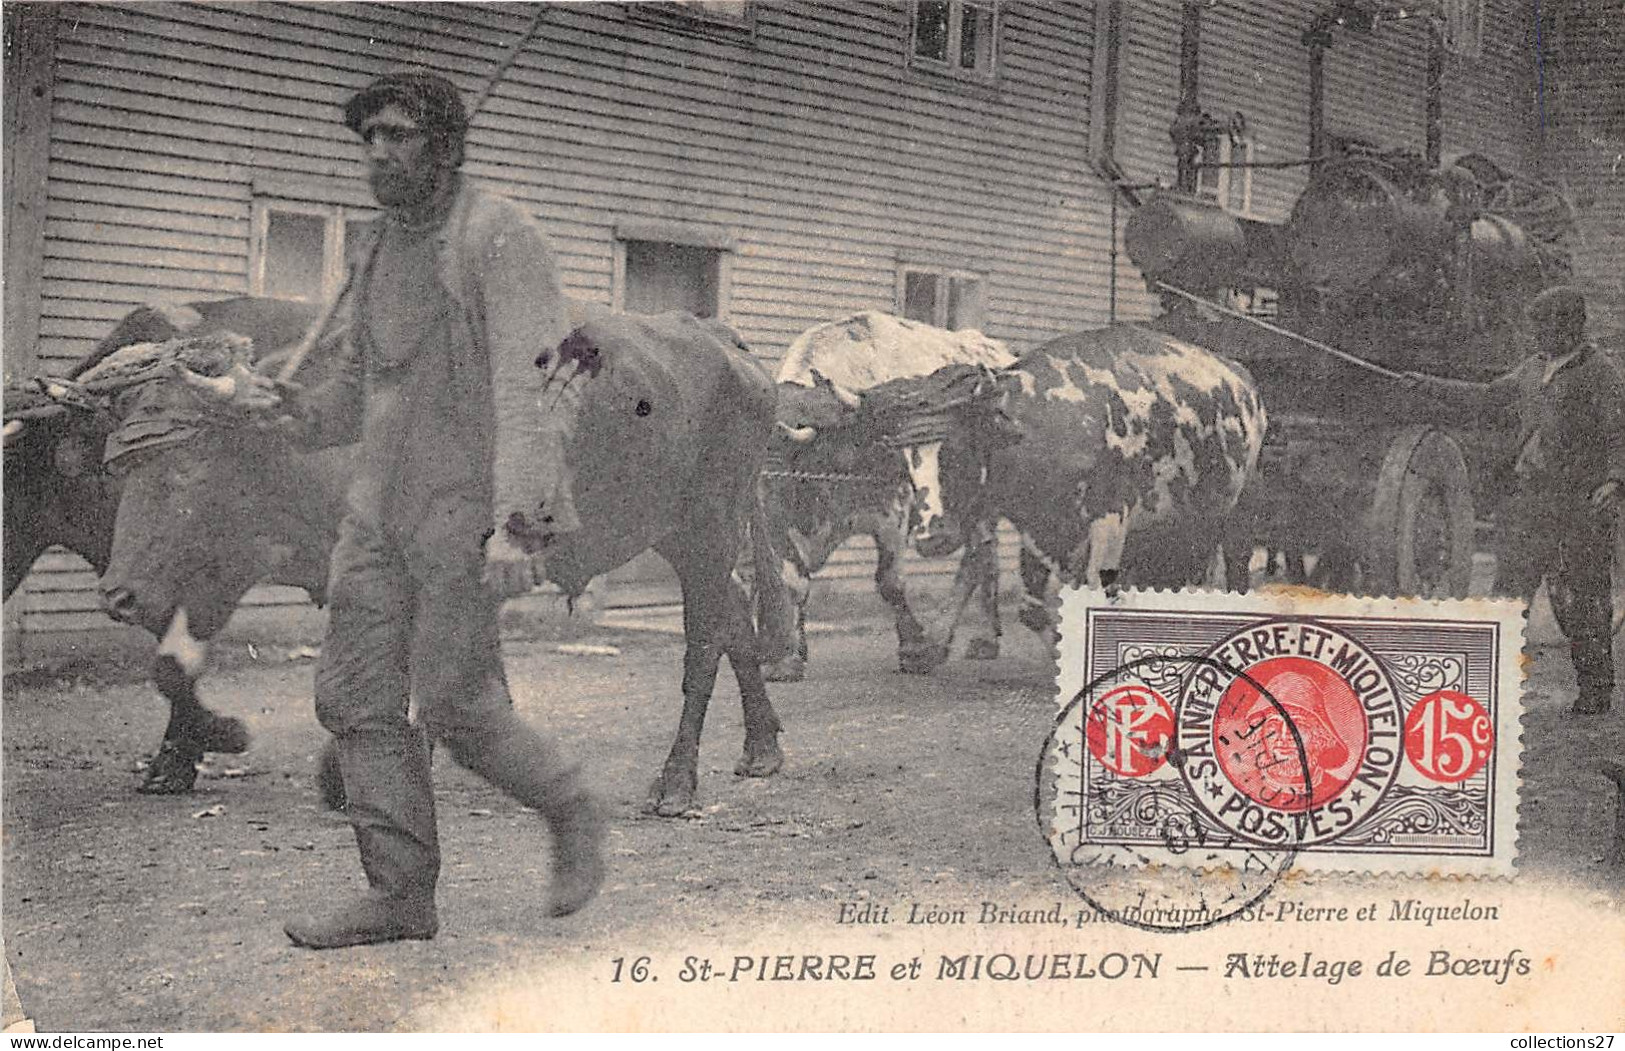 SAINT-PIERRE-ET-MIQUELON- ATTELAGE DE BOEUFS - Saint-Pierre-et-Miquelon